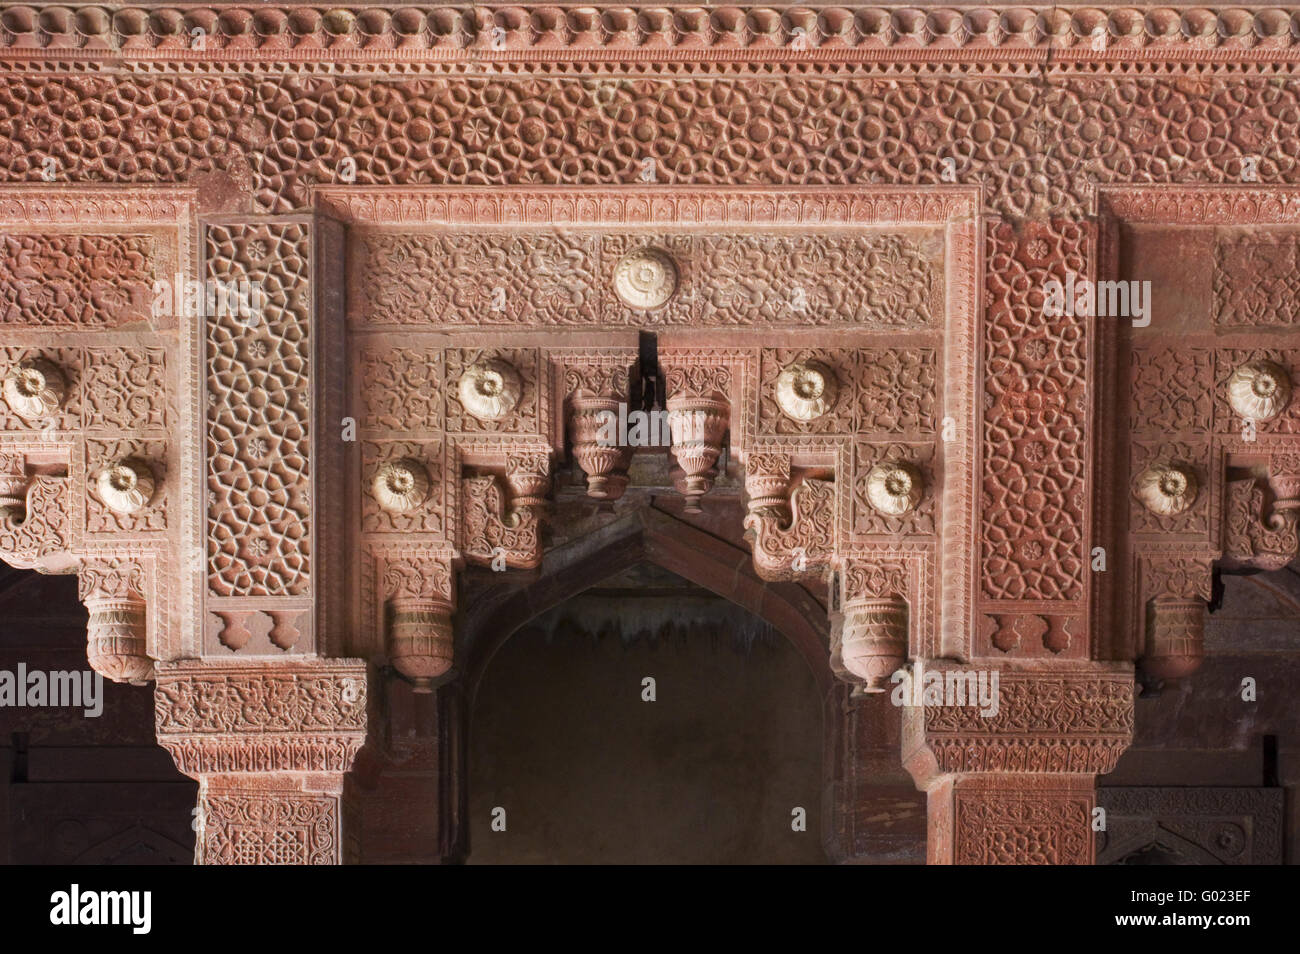 Finement sculptée en pierre rouge au Fort Rouge d'Agra, Inde Banque D'Images